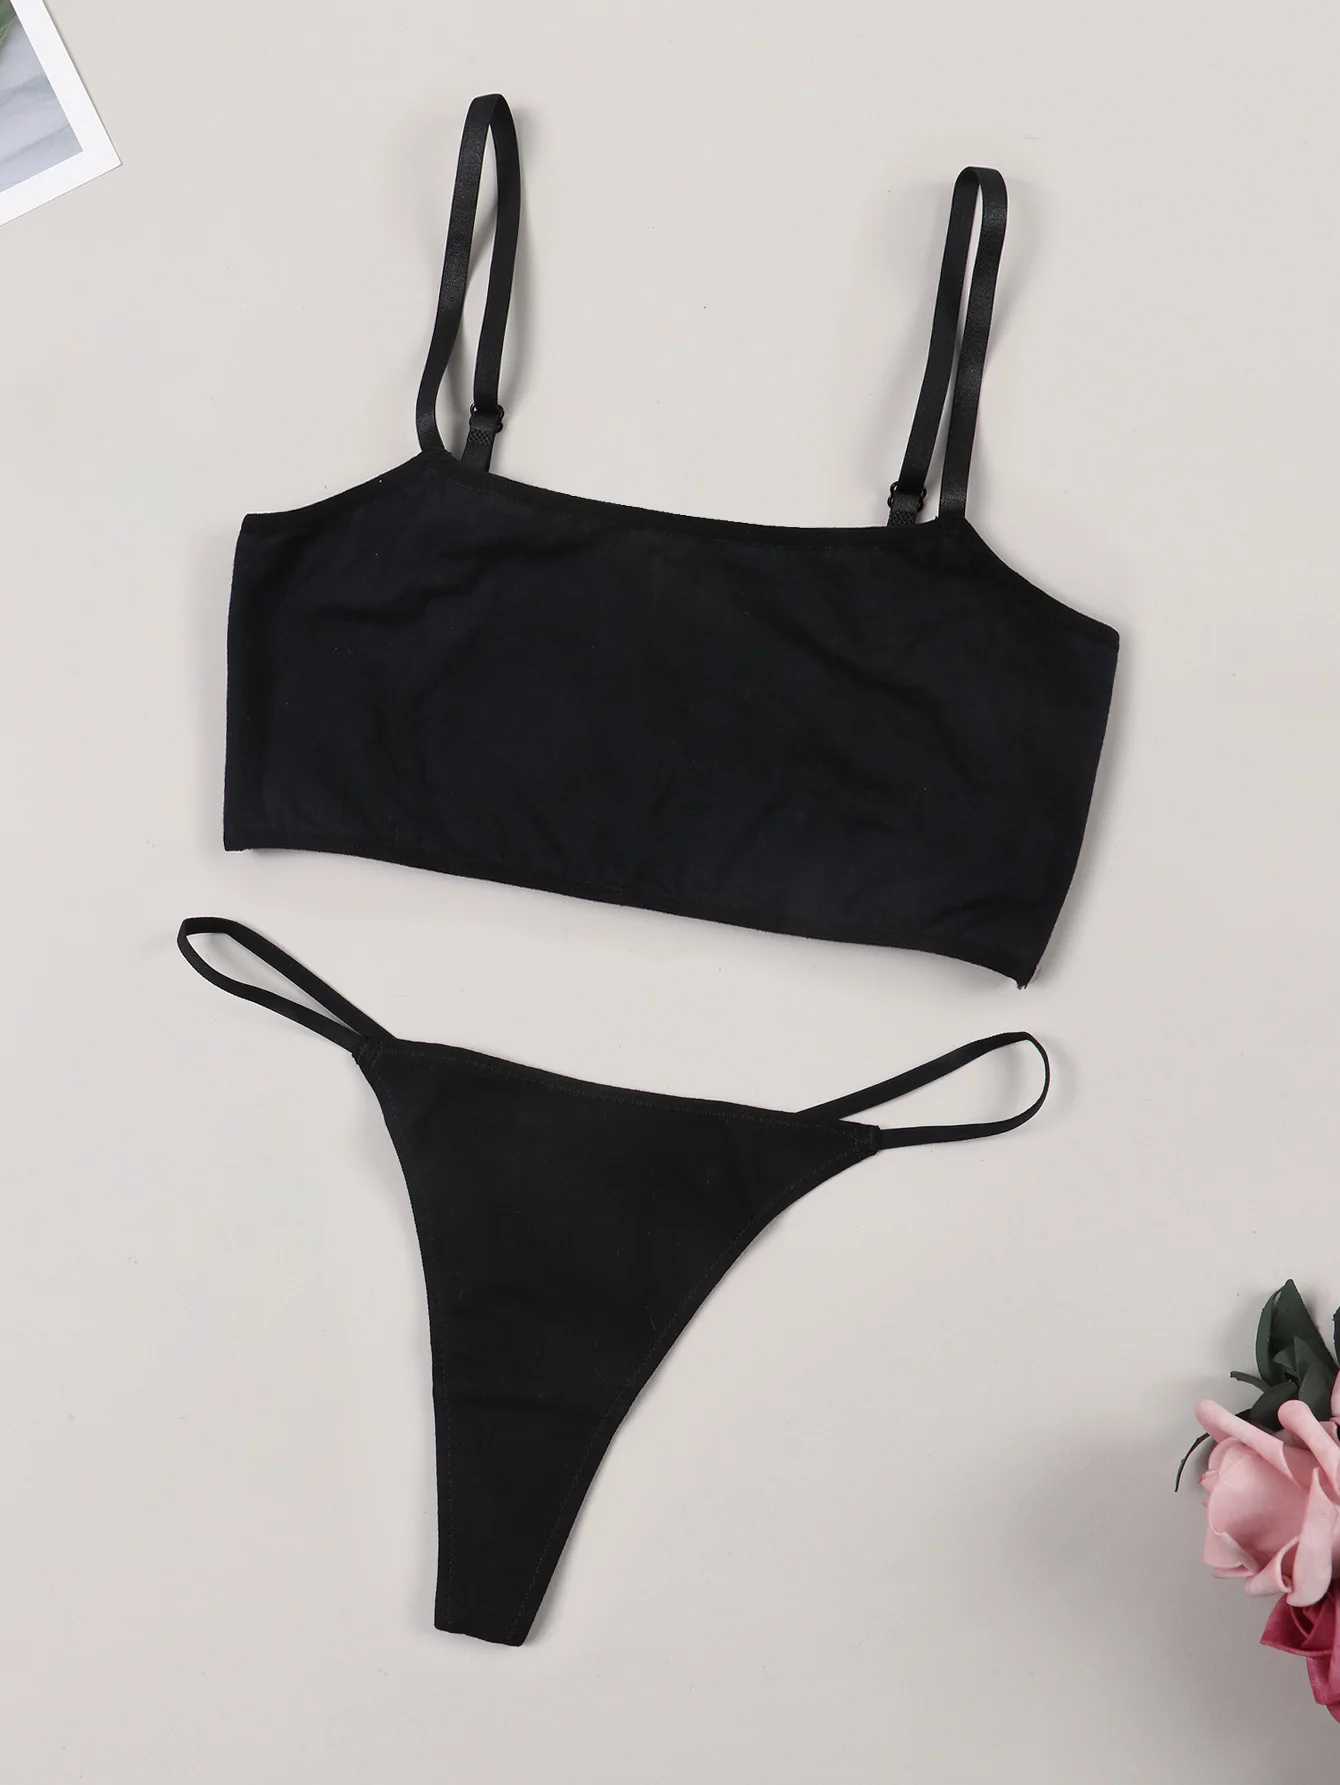 Logirlve Fashion Black Underwear Women Bra Set Push Up Brassiere